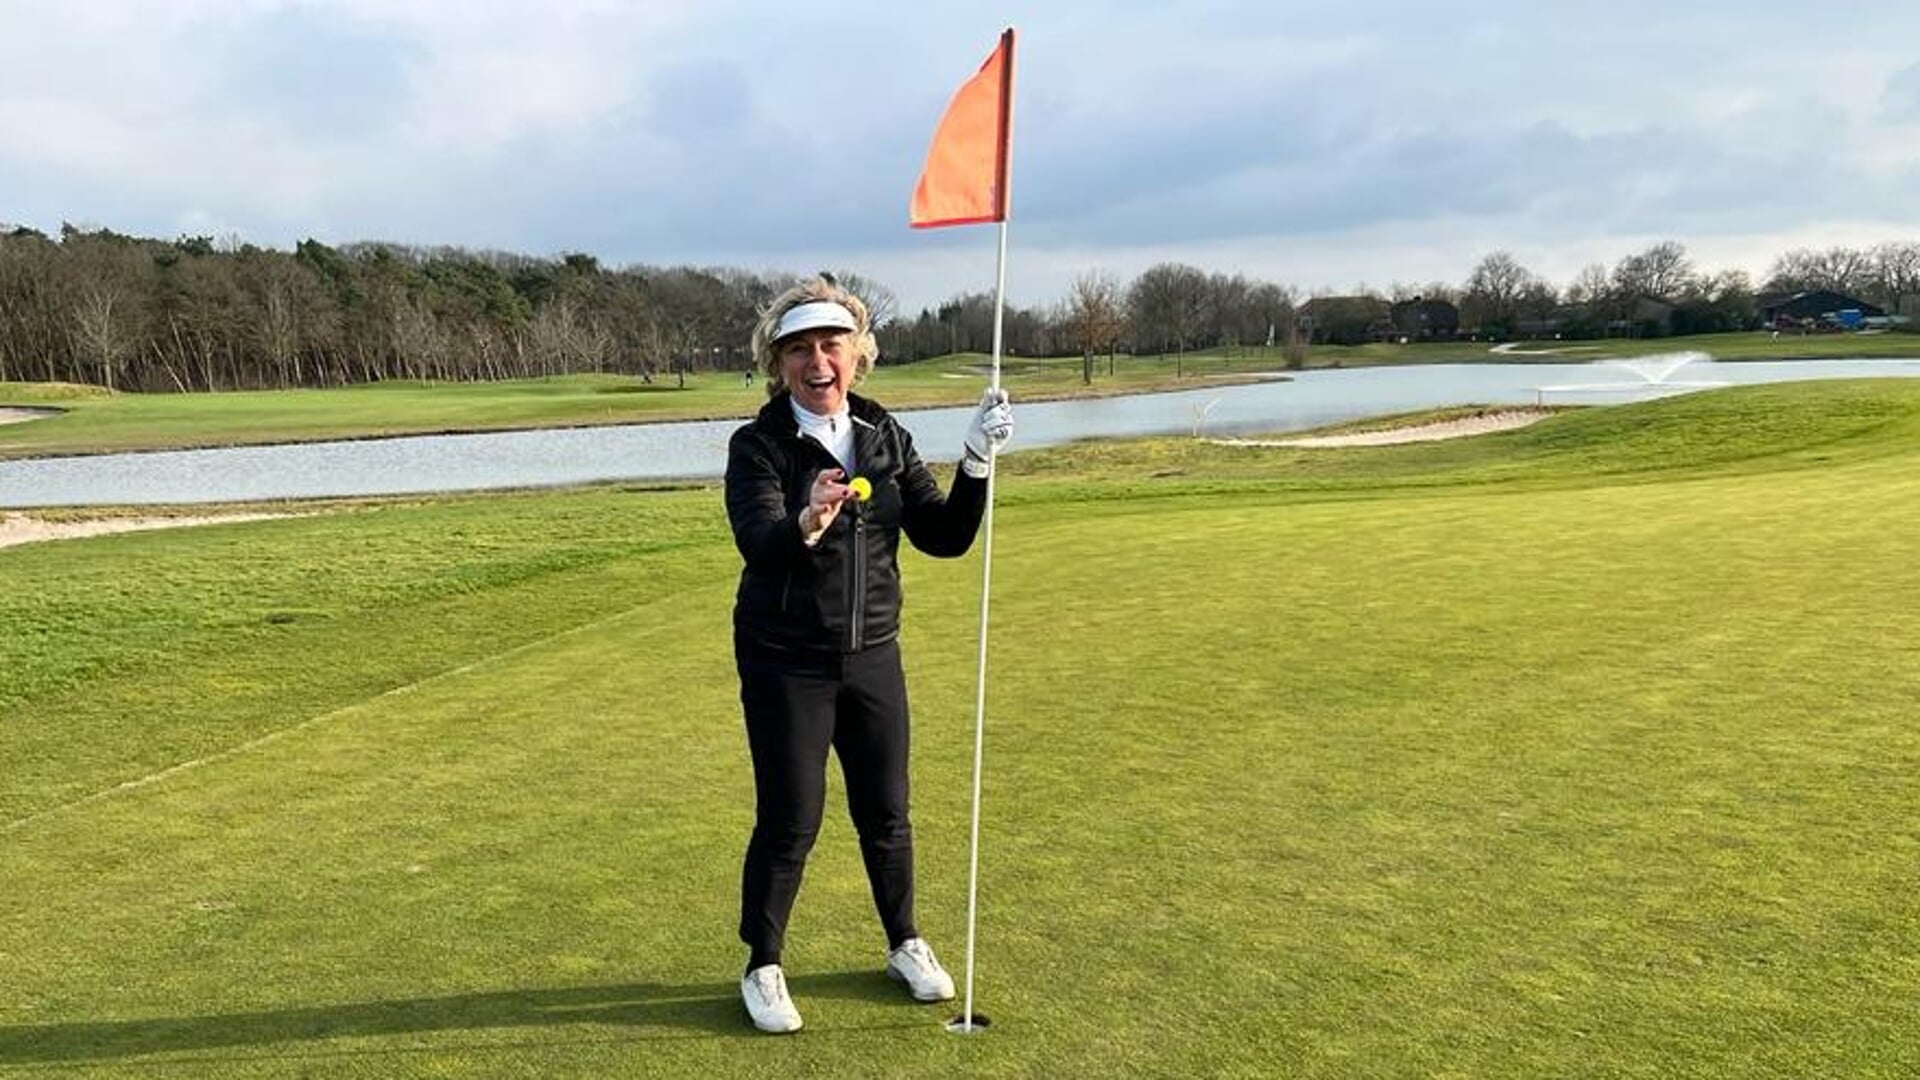 Elly van Hellemondt sloeg haar eerste hole in one zondag op golfbaan Prise d'Eau in Tilburg.